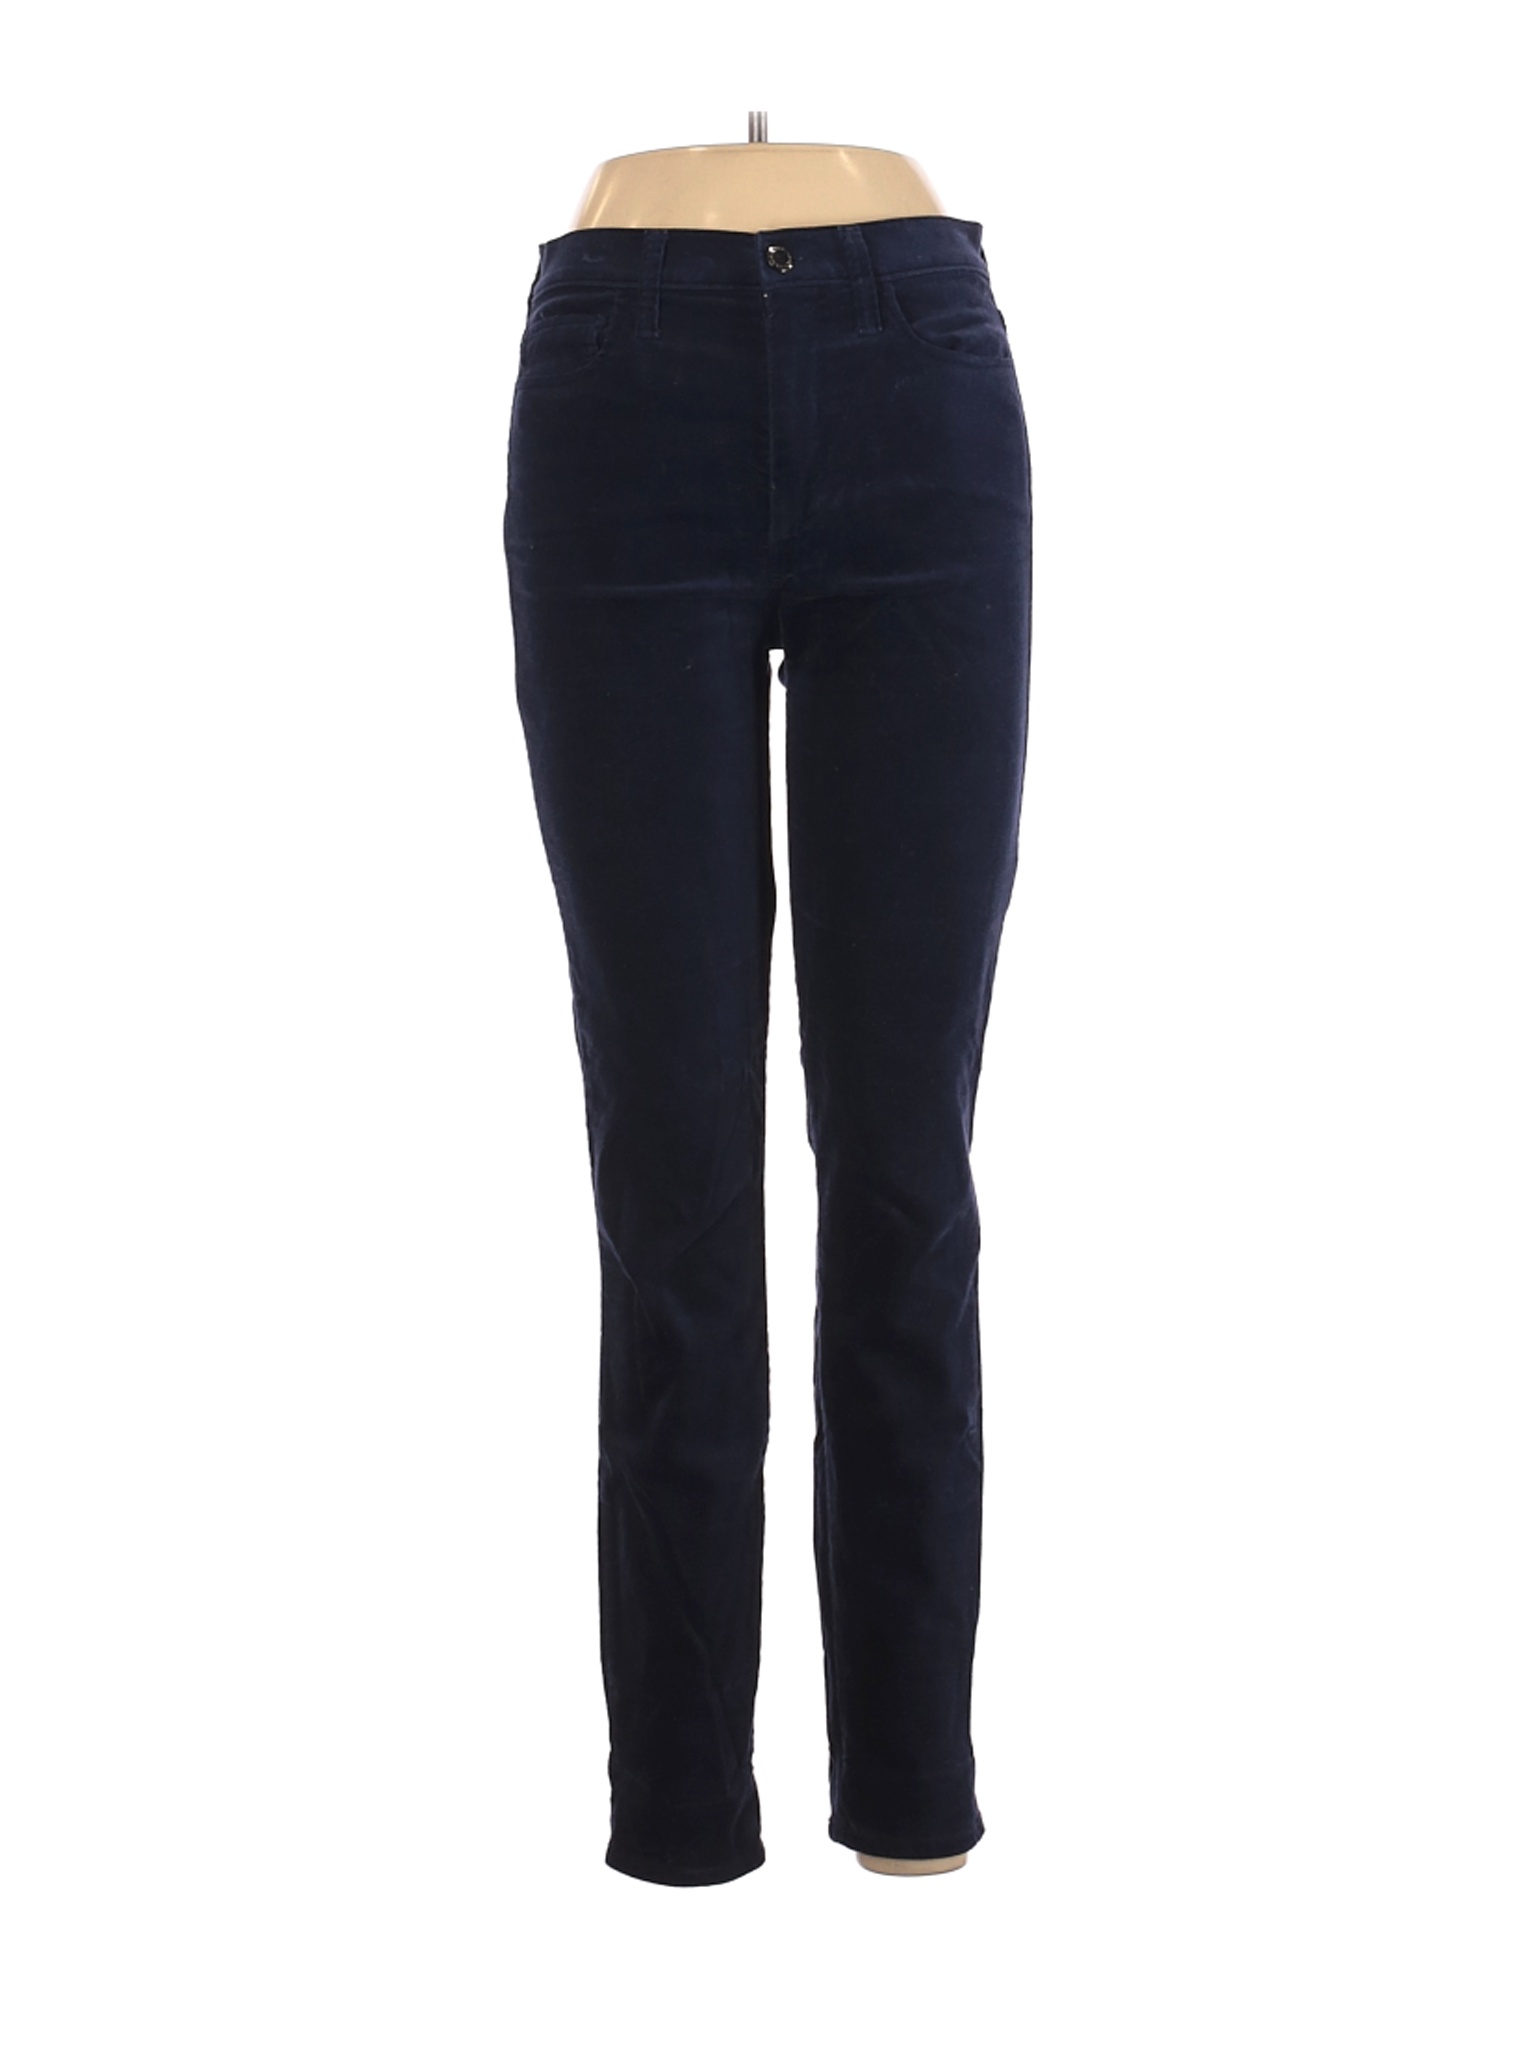 Gap Women Blue Casual Pants 28W | eBay